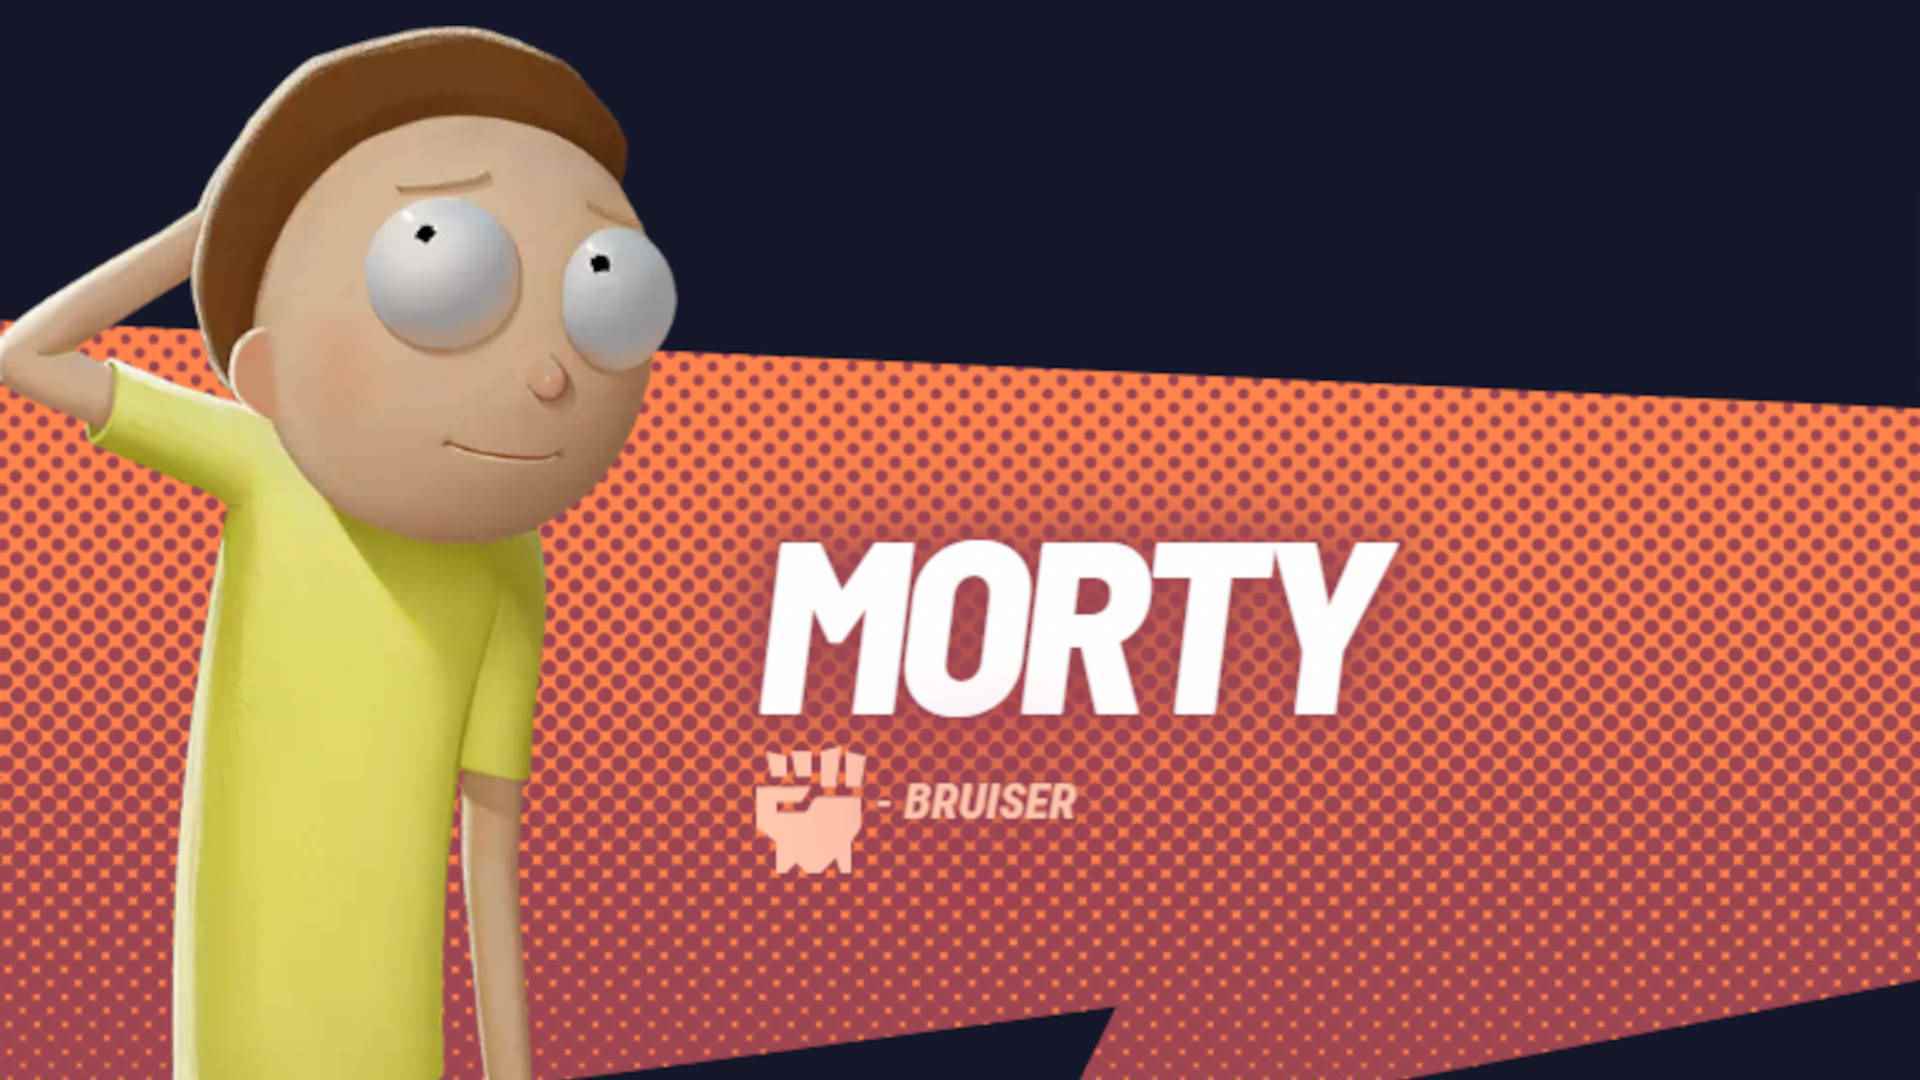 Multiversus yeni karakterler: Rick and Morty'den Morty, kendine has sarı tişörtüyle biraz mahçup görünüyor.